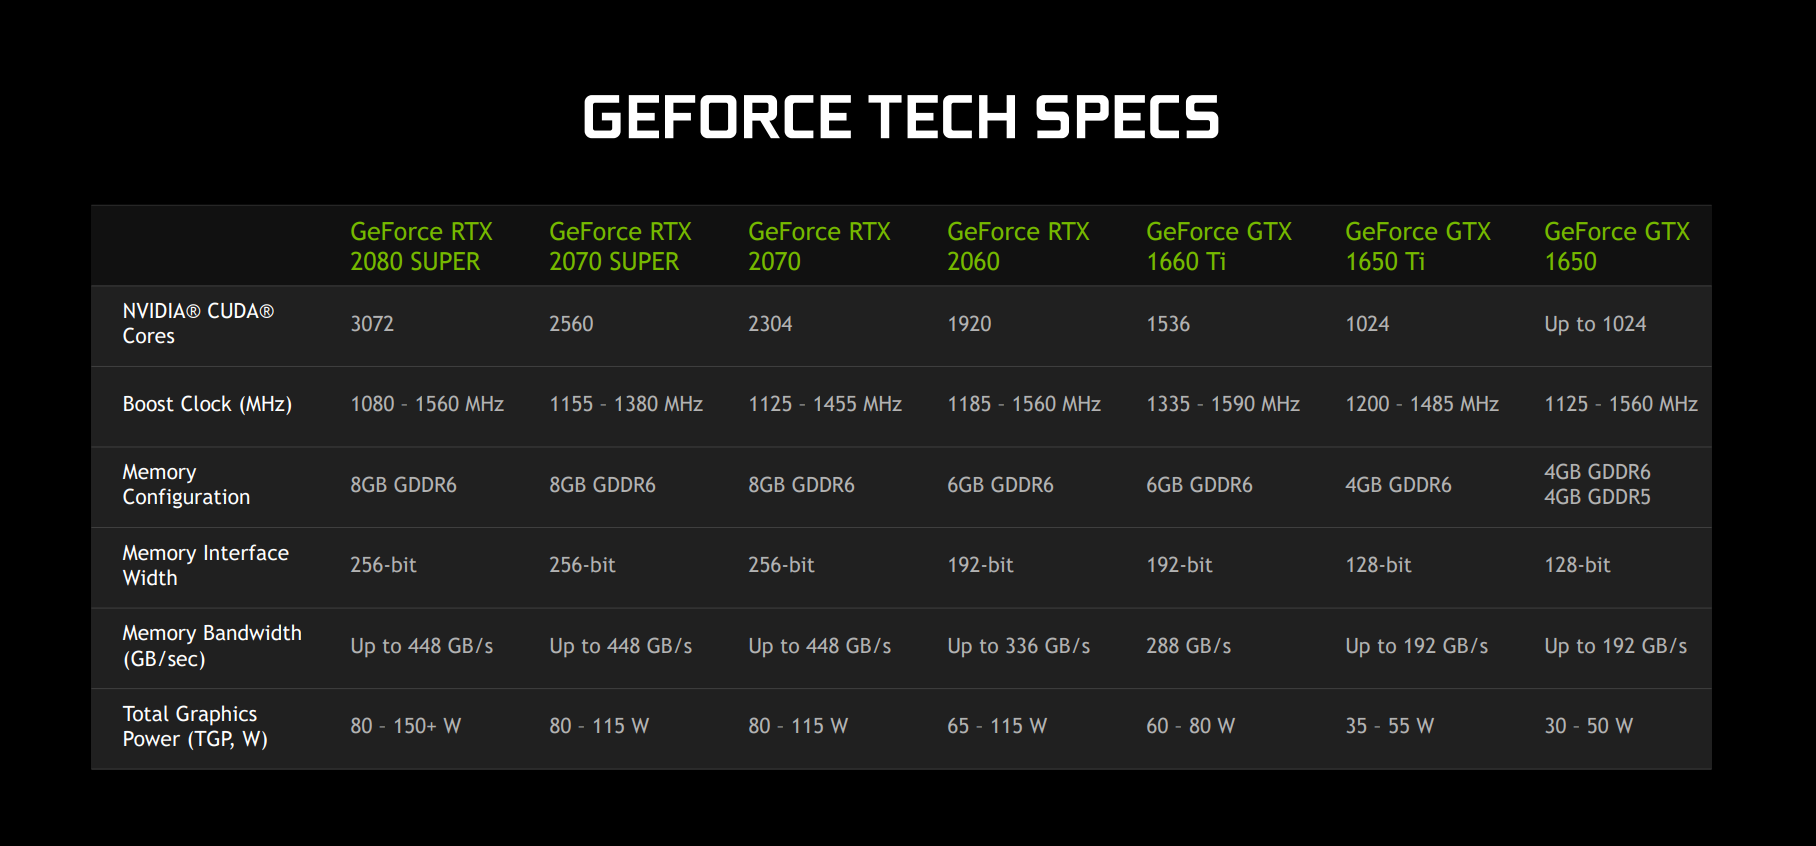 Если вы хотите ознакомиться с техническими характеристиками новых графических процессоров, то эта таблица для вас.